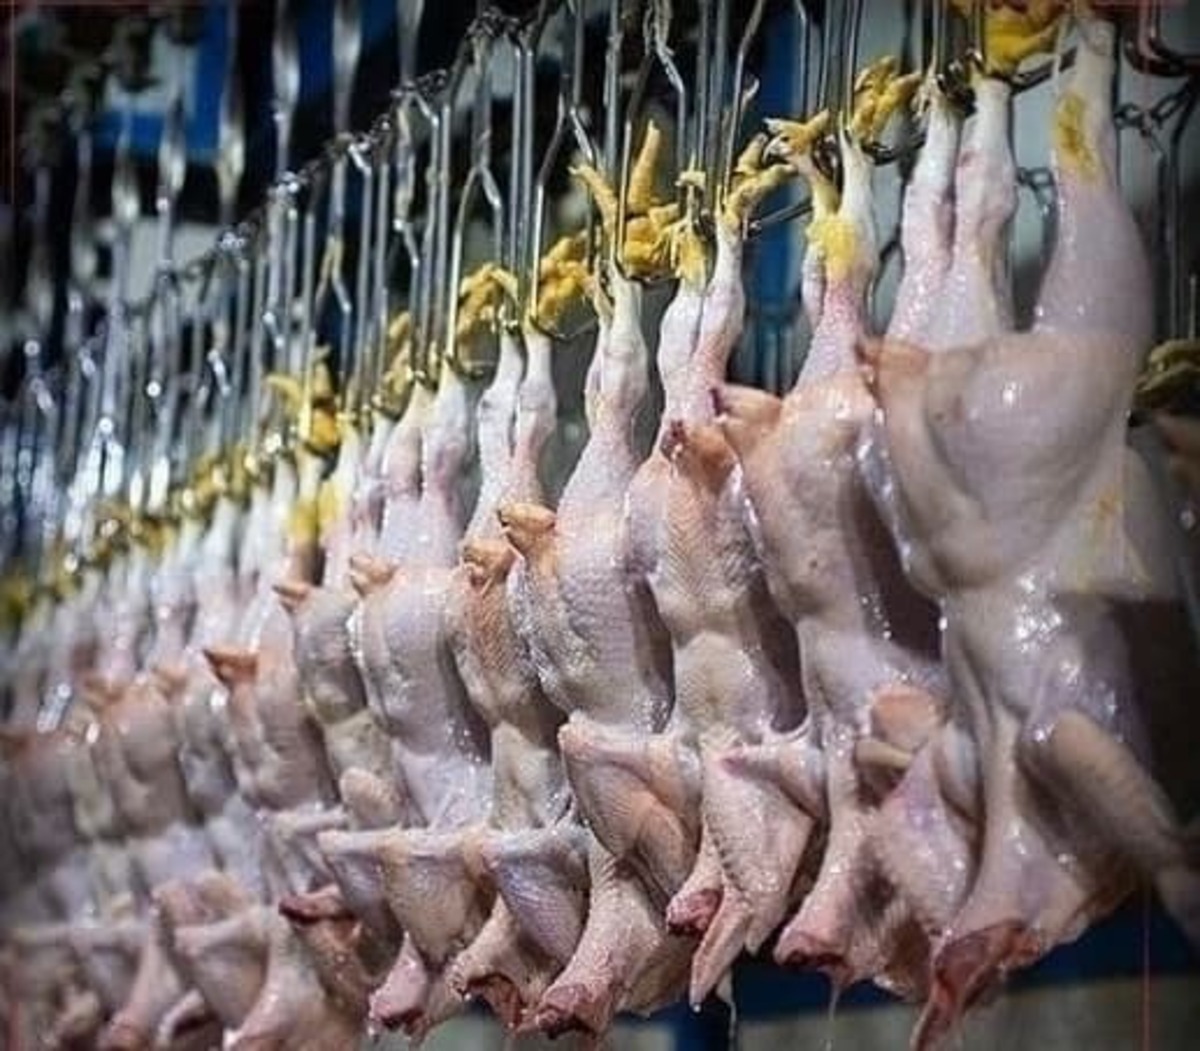 رئیس انجمن پرورش دهندگان مرغ گوشتی گفت: با توجه به نیاز کشور، ماهانه ۱۲۰ تا ۱۳۰ میلیون قطعه جوجه ریزی باید در کشور صورت گیرد تا میزان عرضه افزایش یابد.